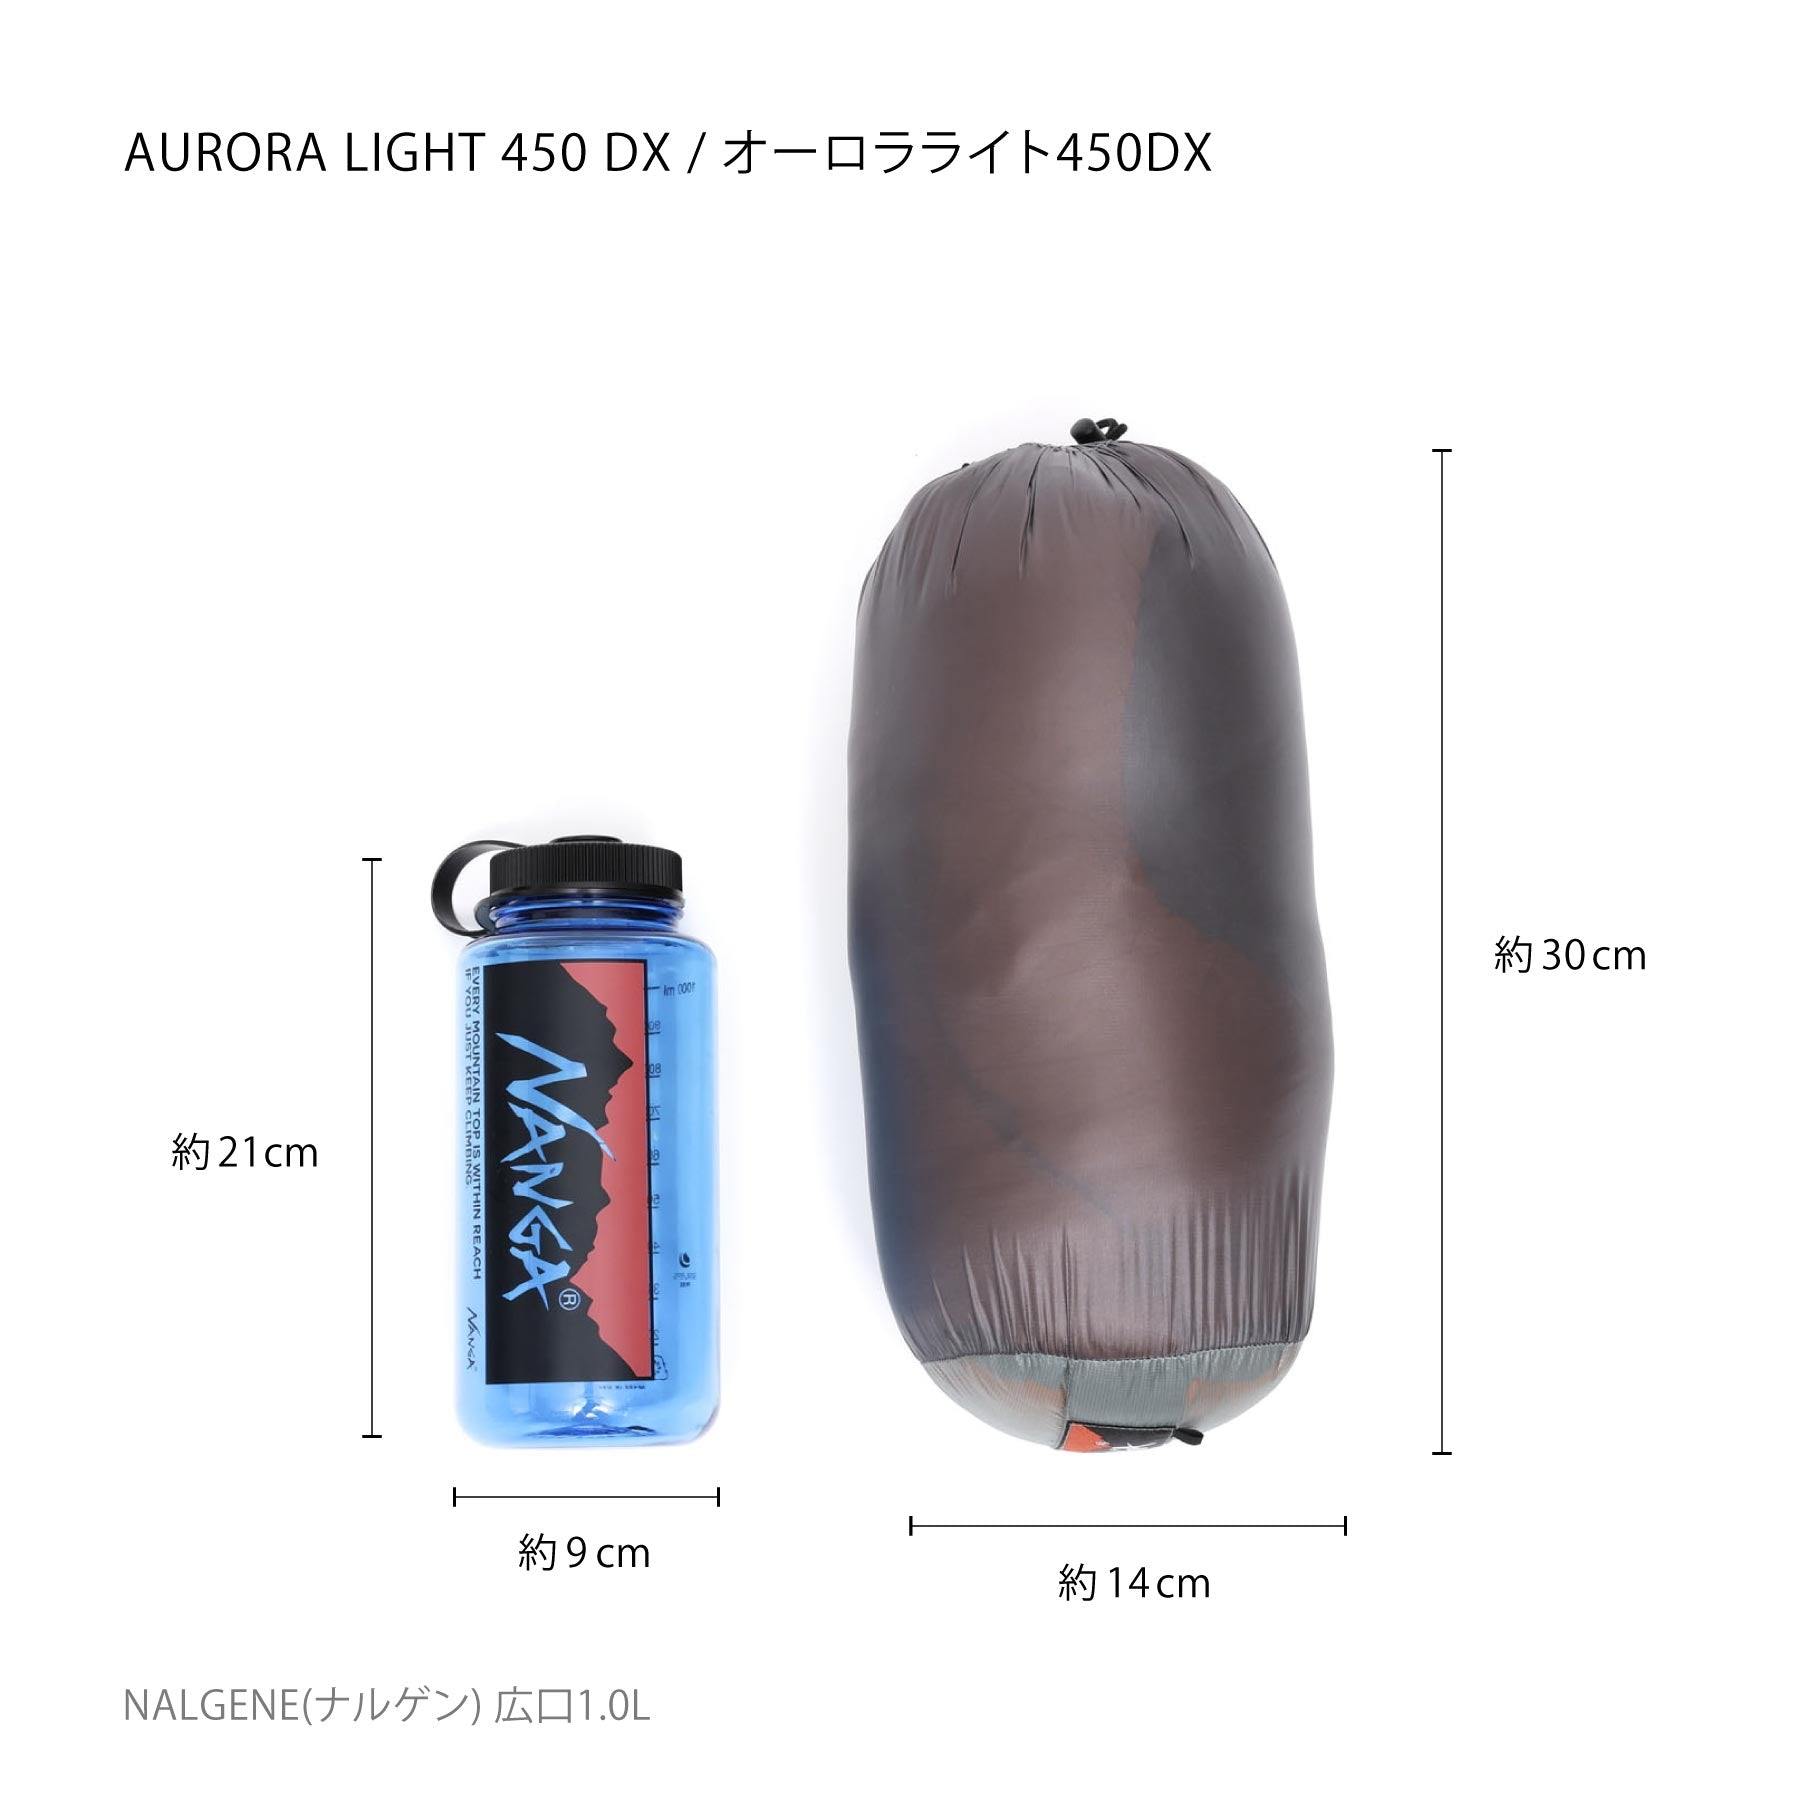 【新品未使用品】NANGA AURORA light 450dx ロング